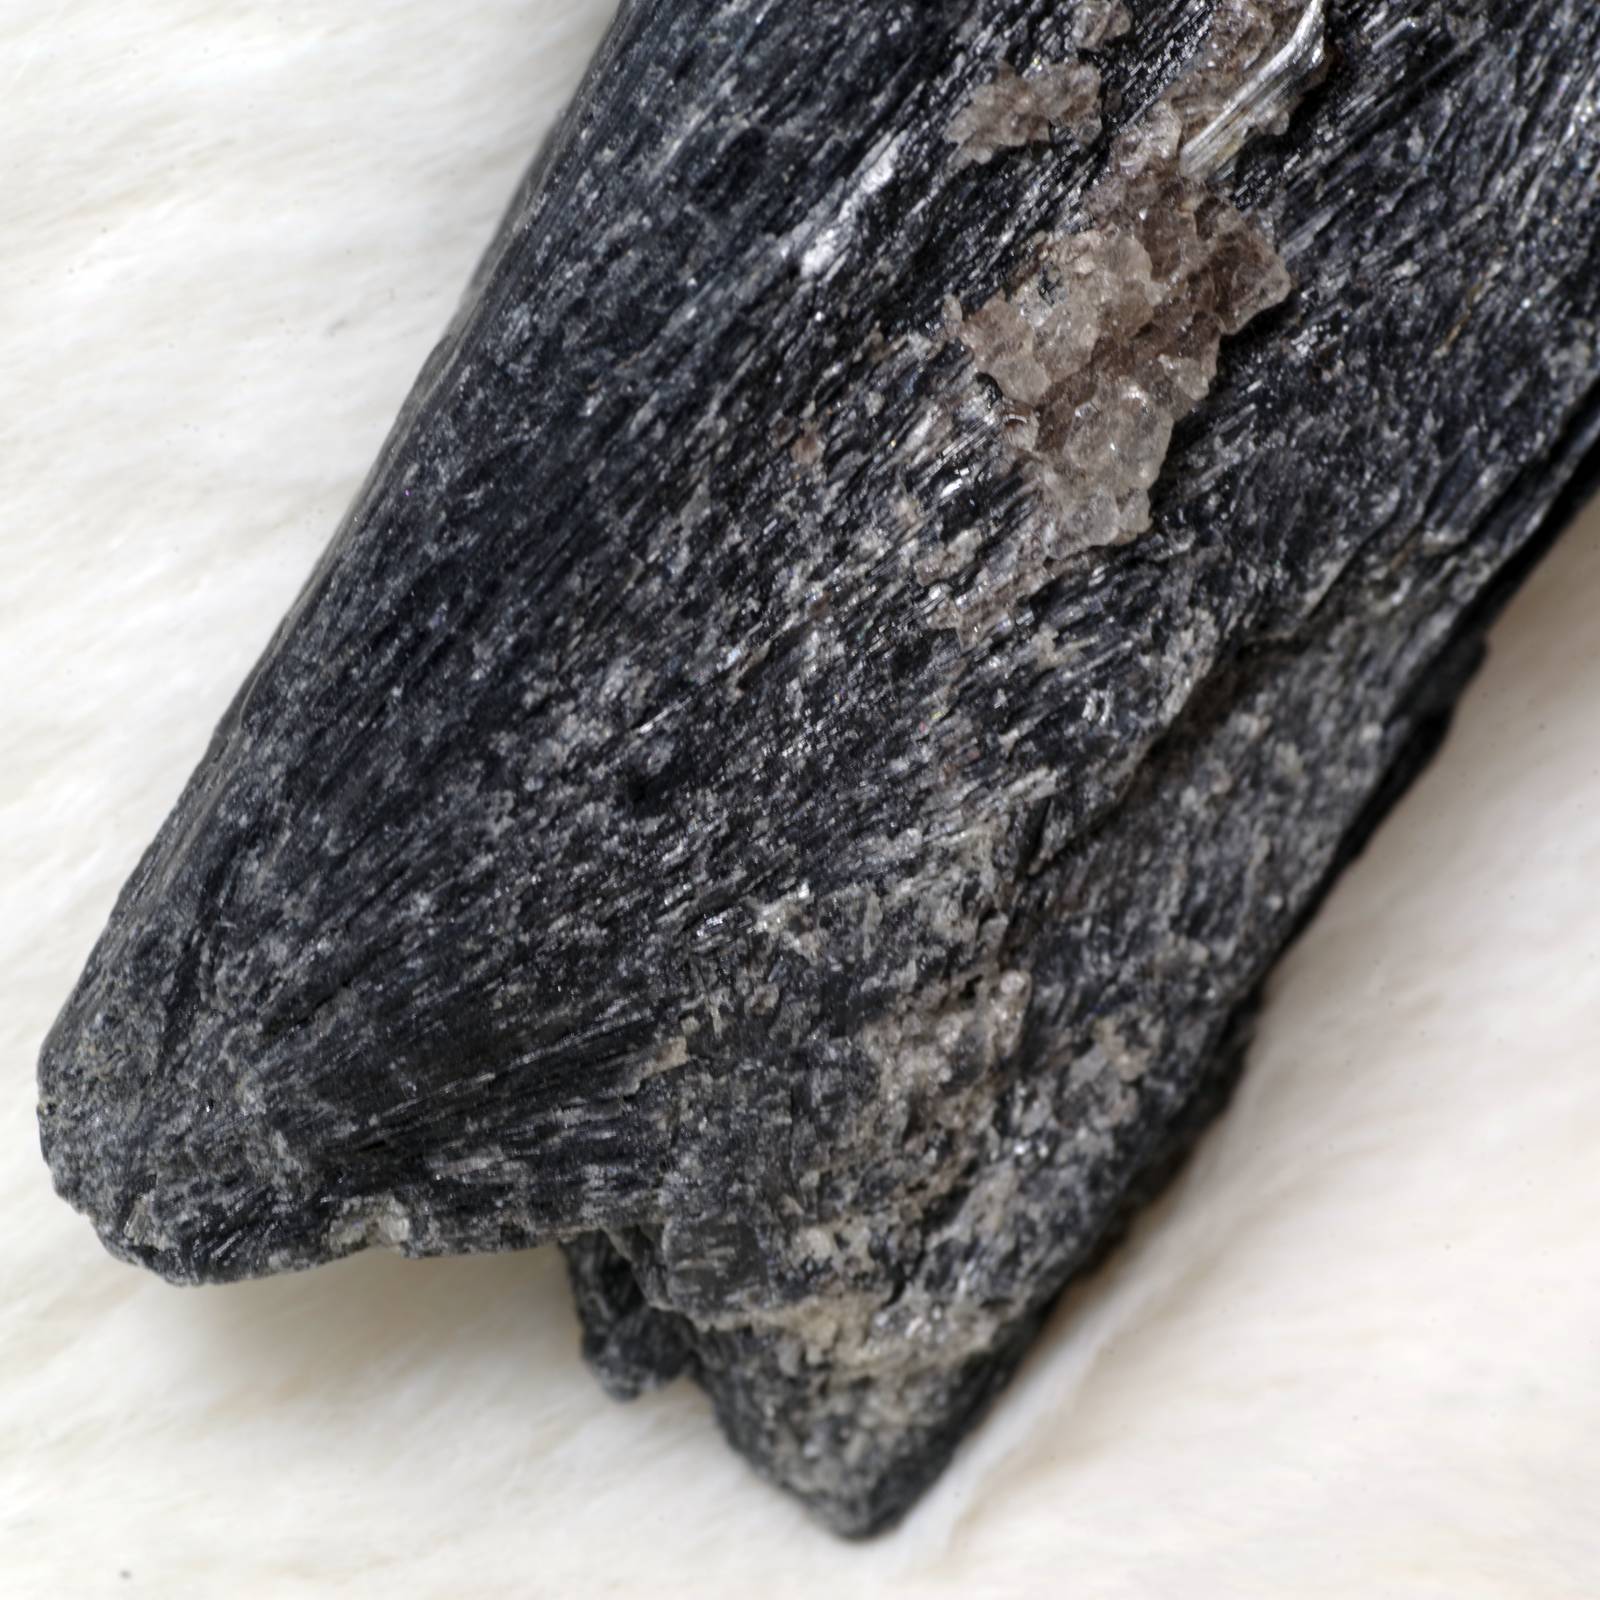 カイヤナイト 藍晶石 黒 ブラジル産3 Black Kyanite Brazil 原石 写真現物 動画あり